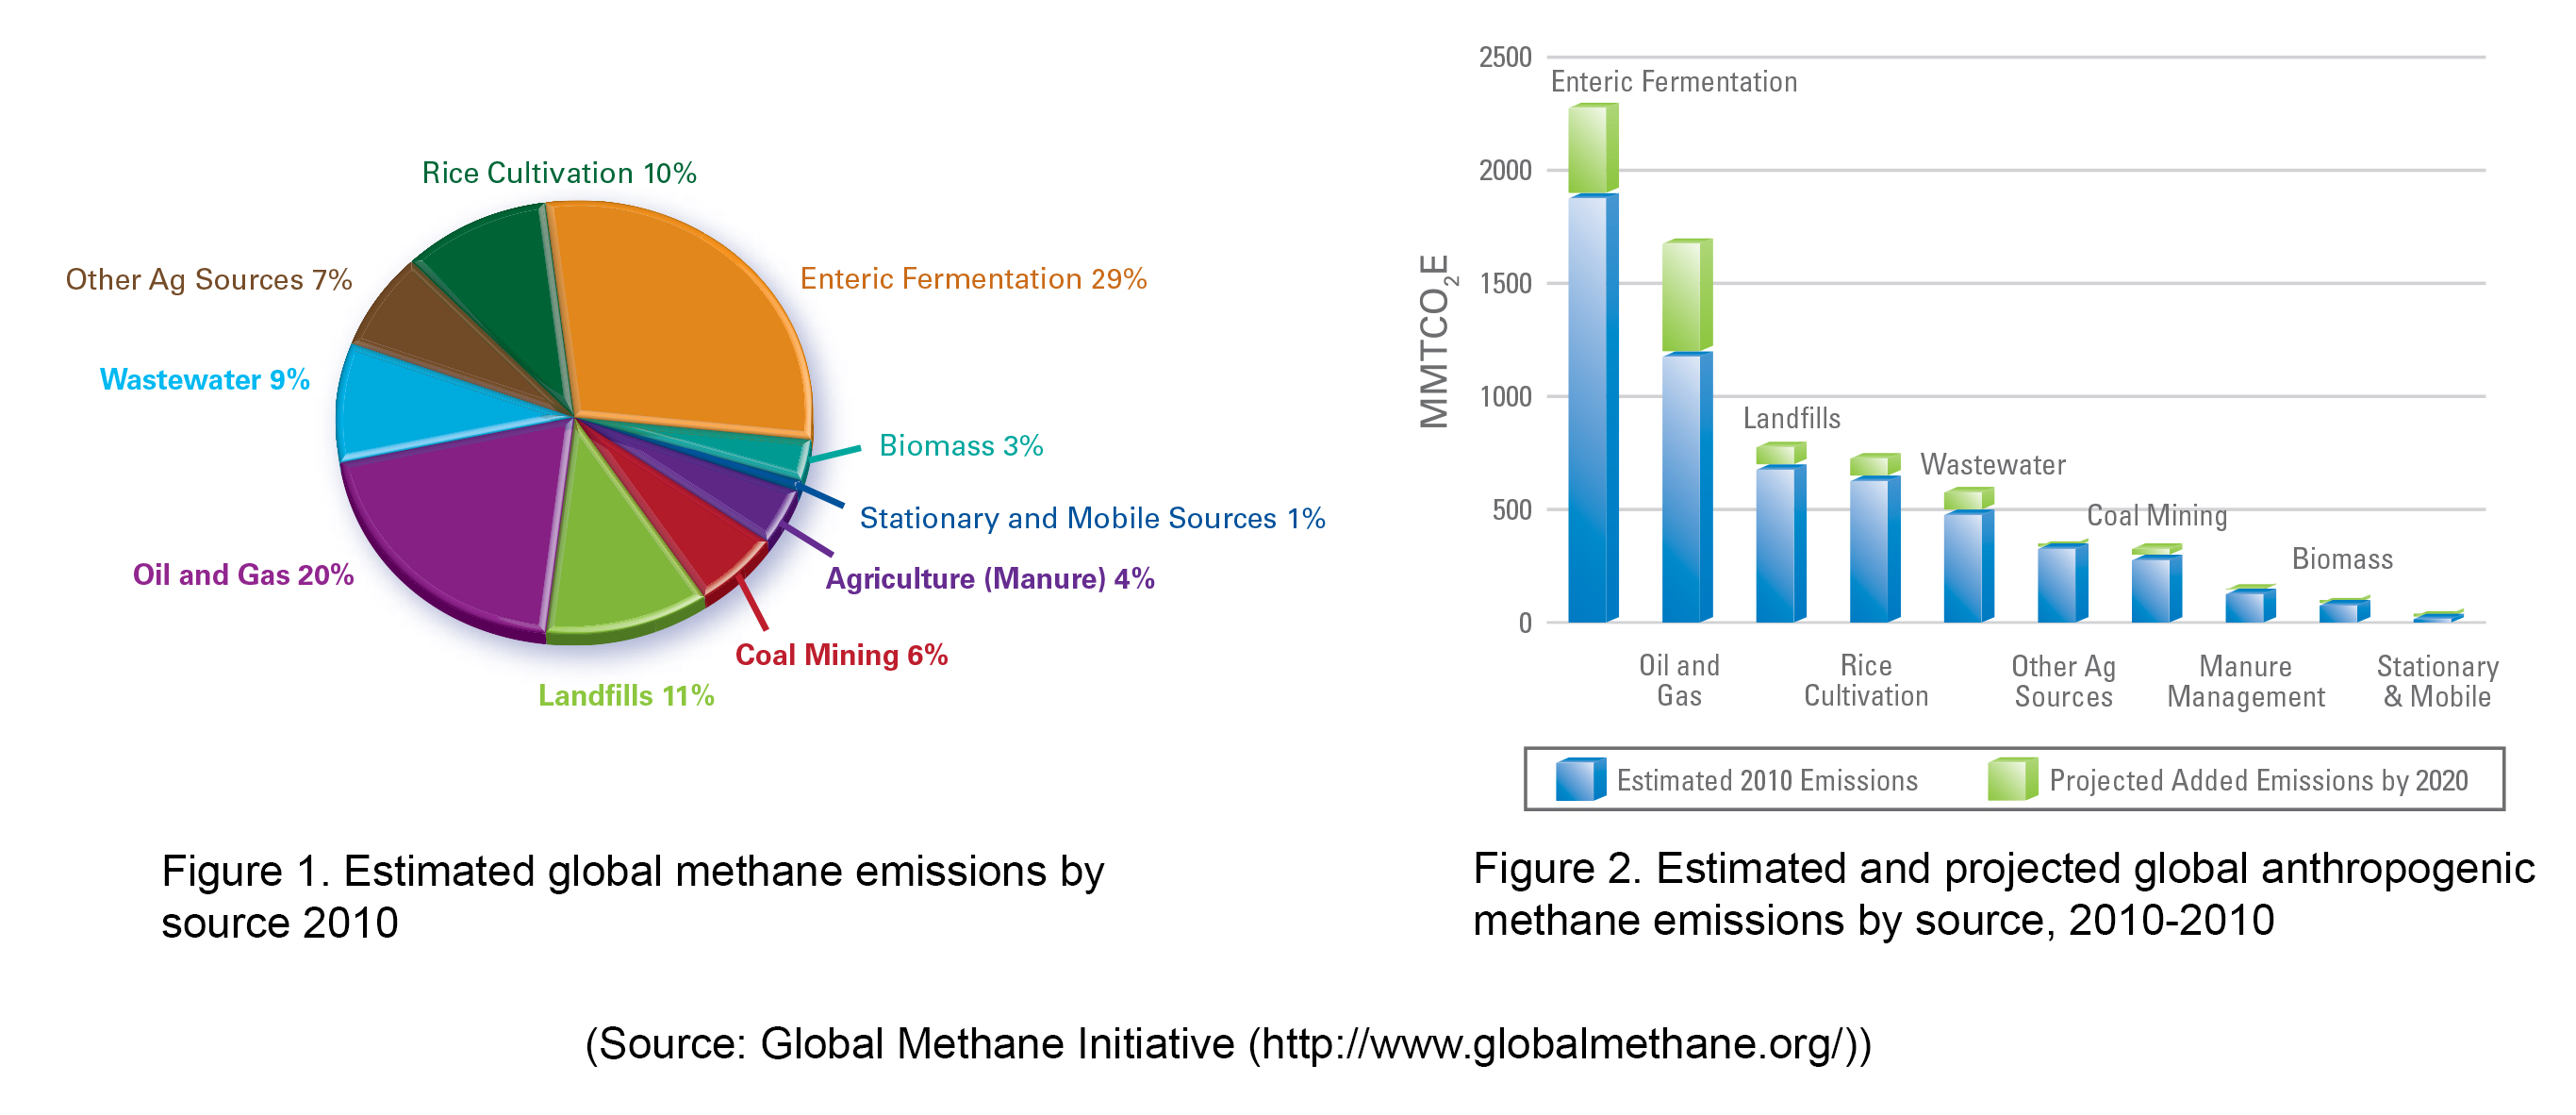 Global Methane Initiative